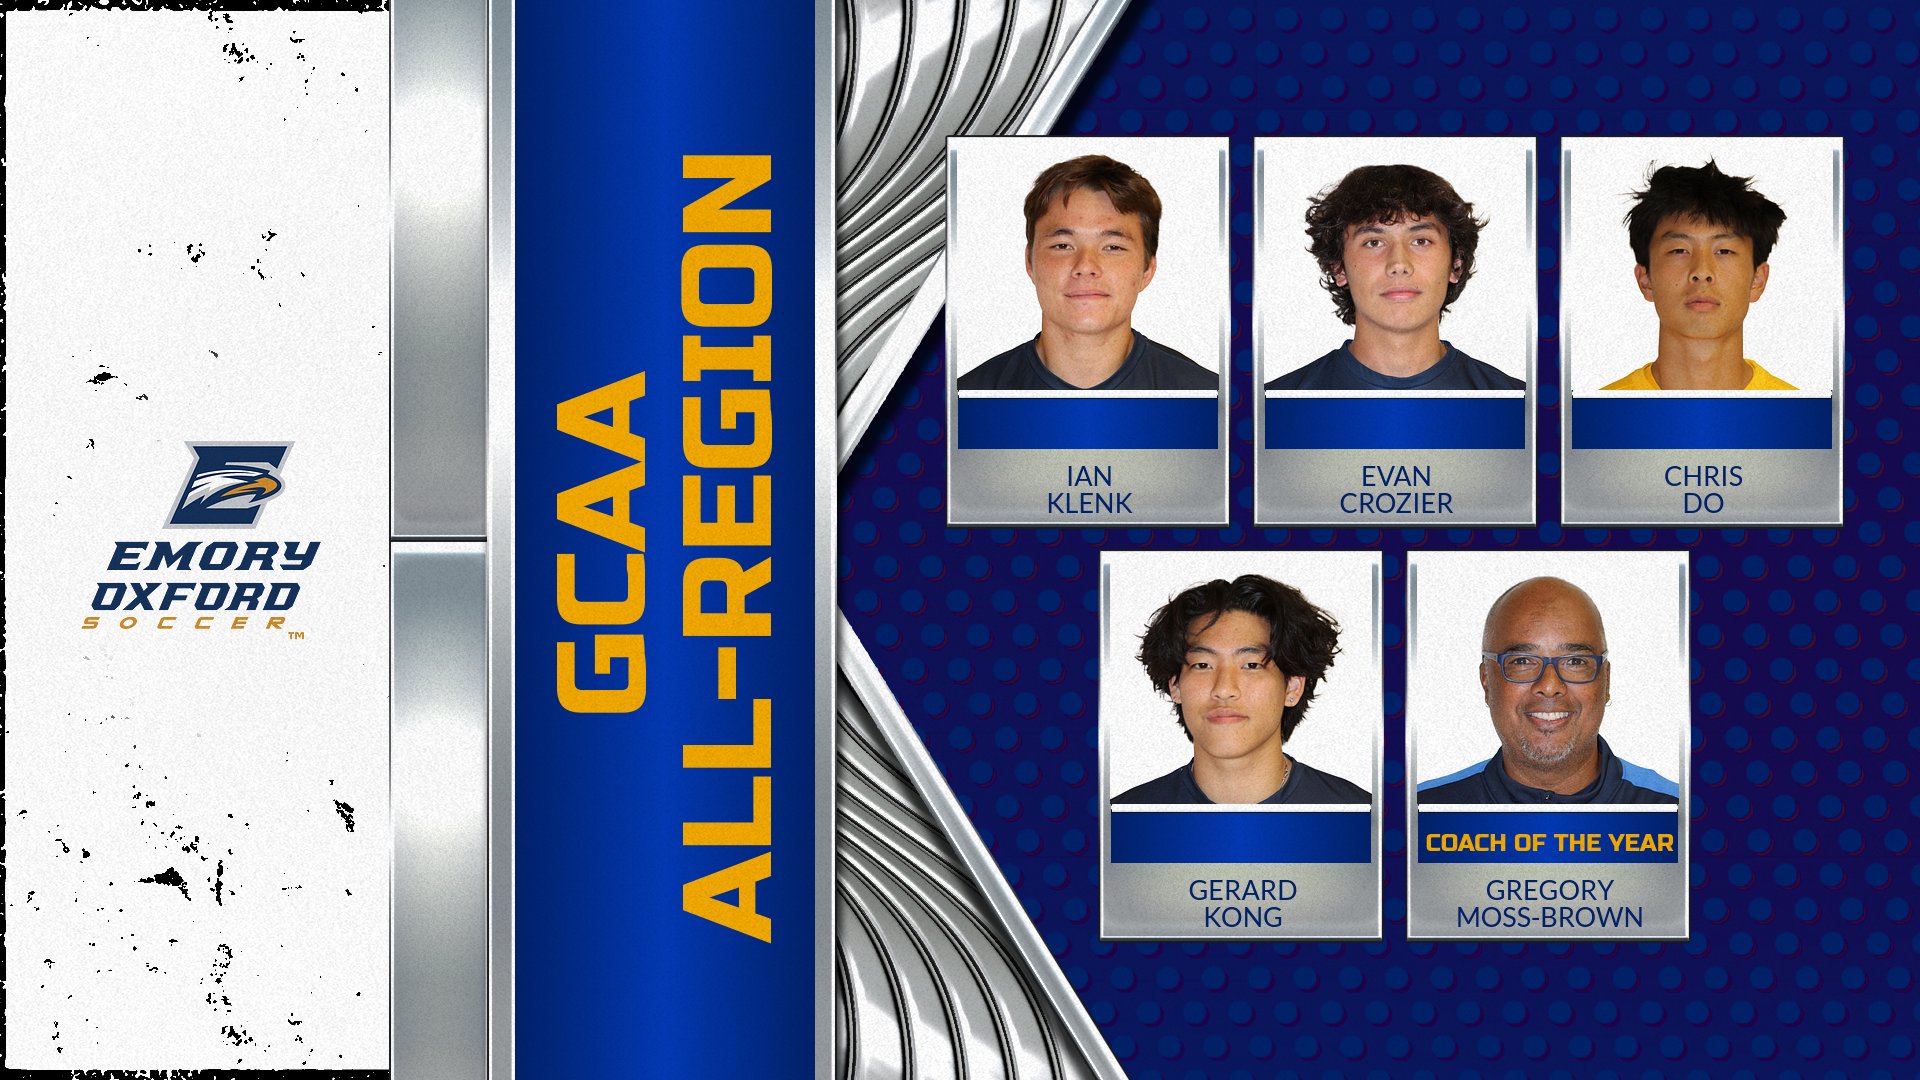 Men's soccer team members named to GCAA All-Region team